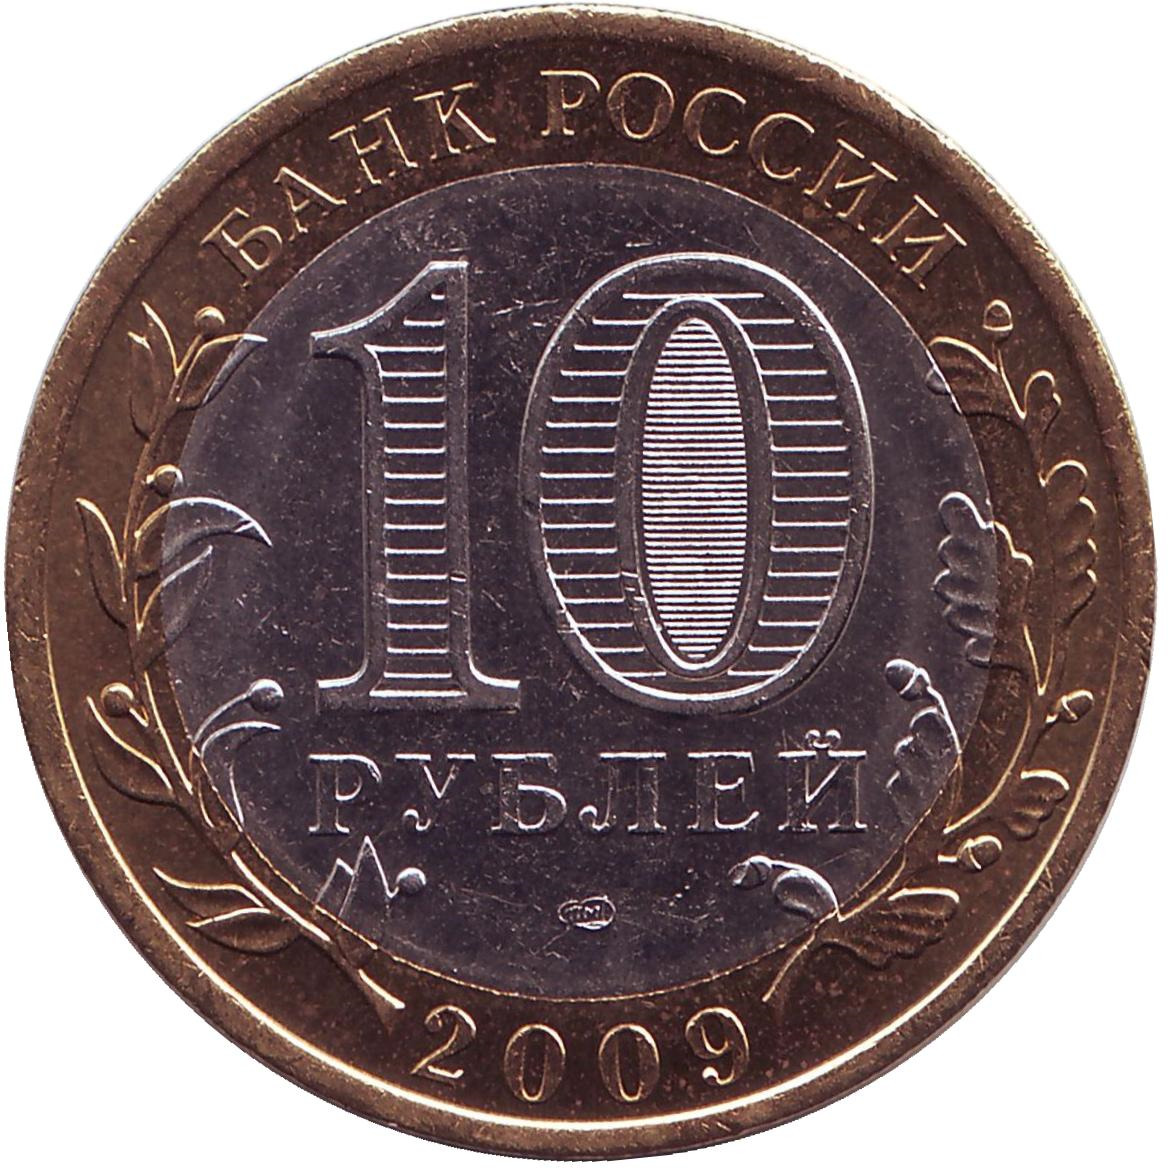 1000 рублей в казахстане